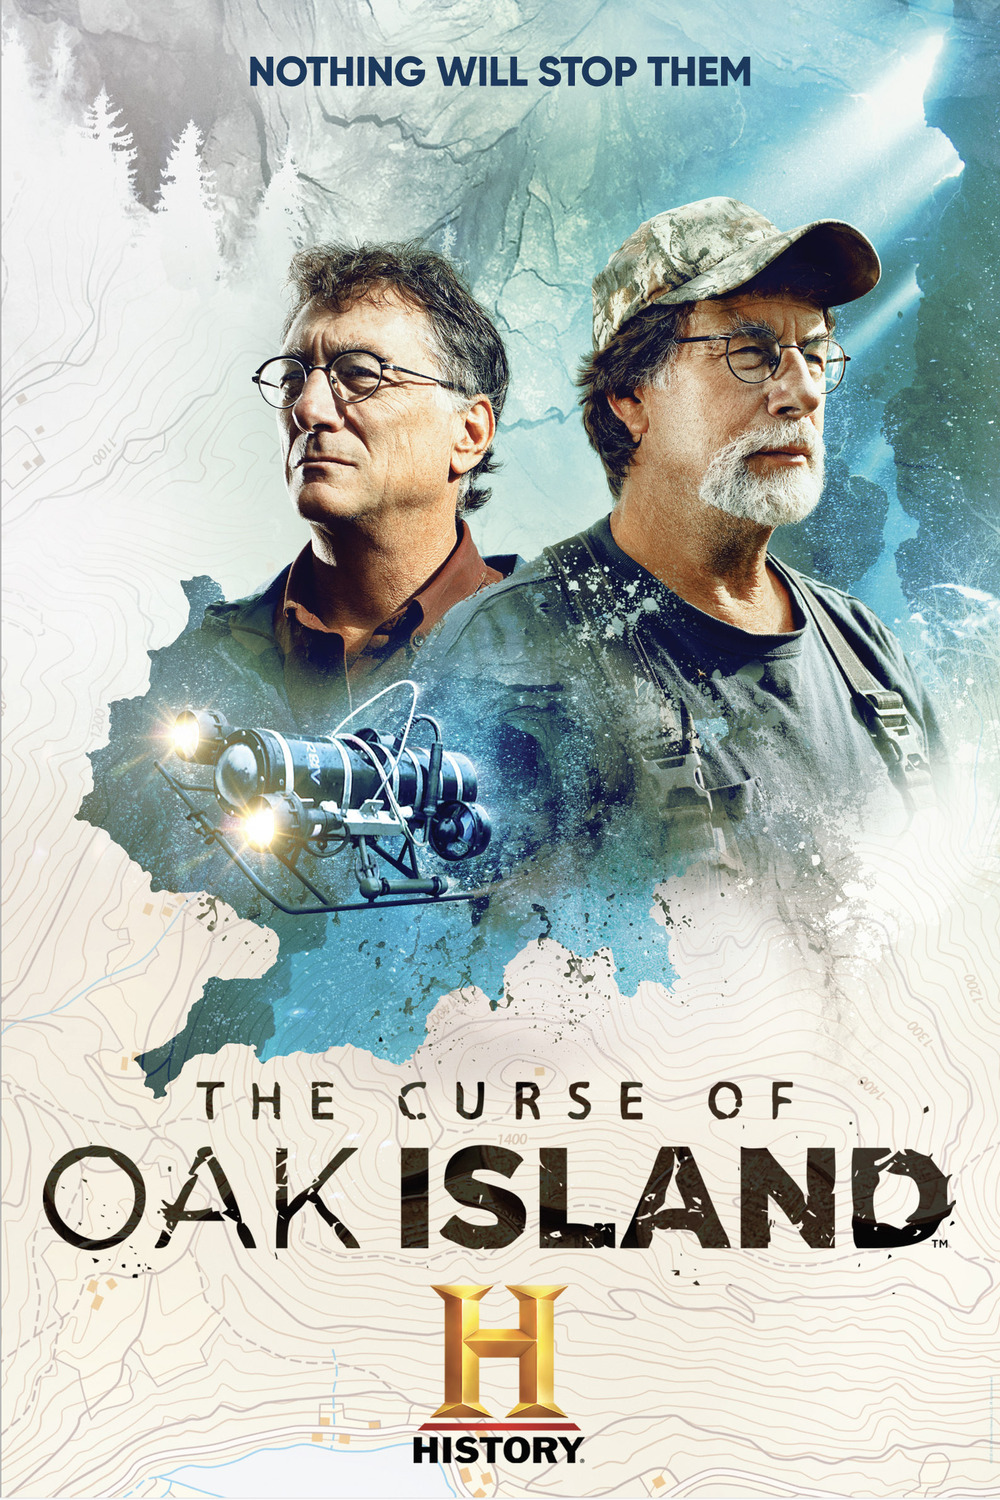 The curse of oak island tv series â